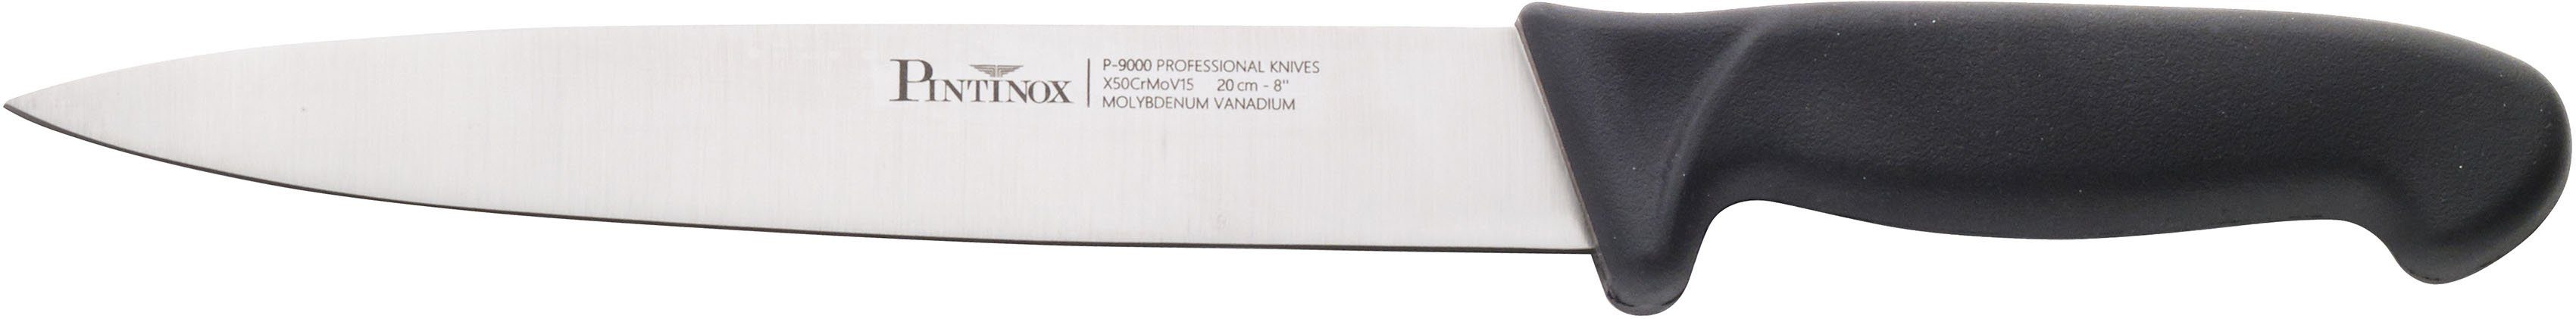 Allzweckmesser 20 Edelstahl PINTINOX rutschfestem cm Coltelli Kunststoff, P9000, Klingenlänge mit